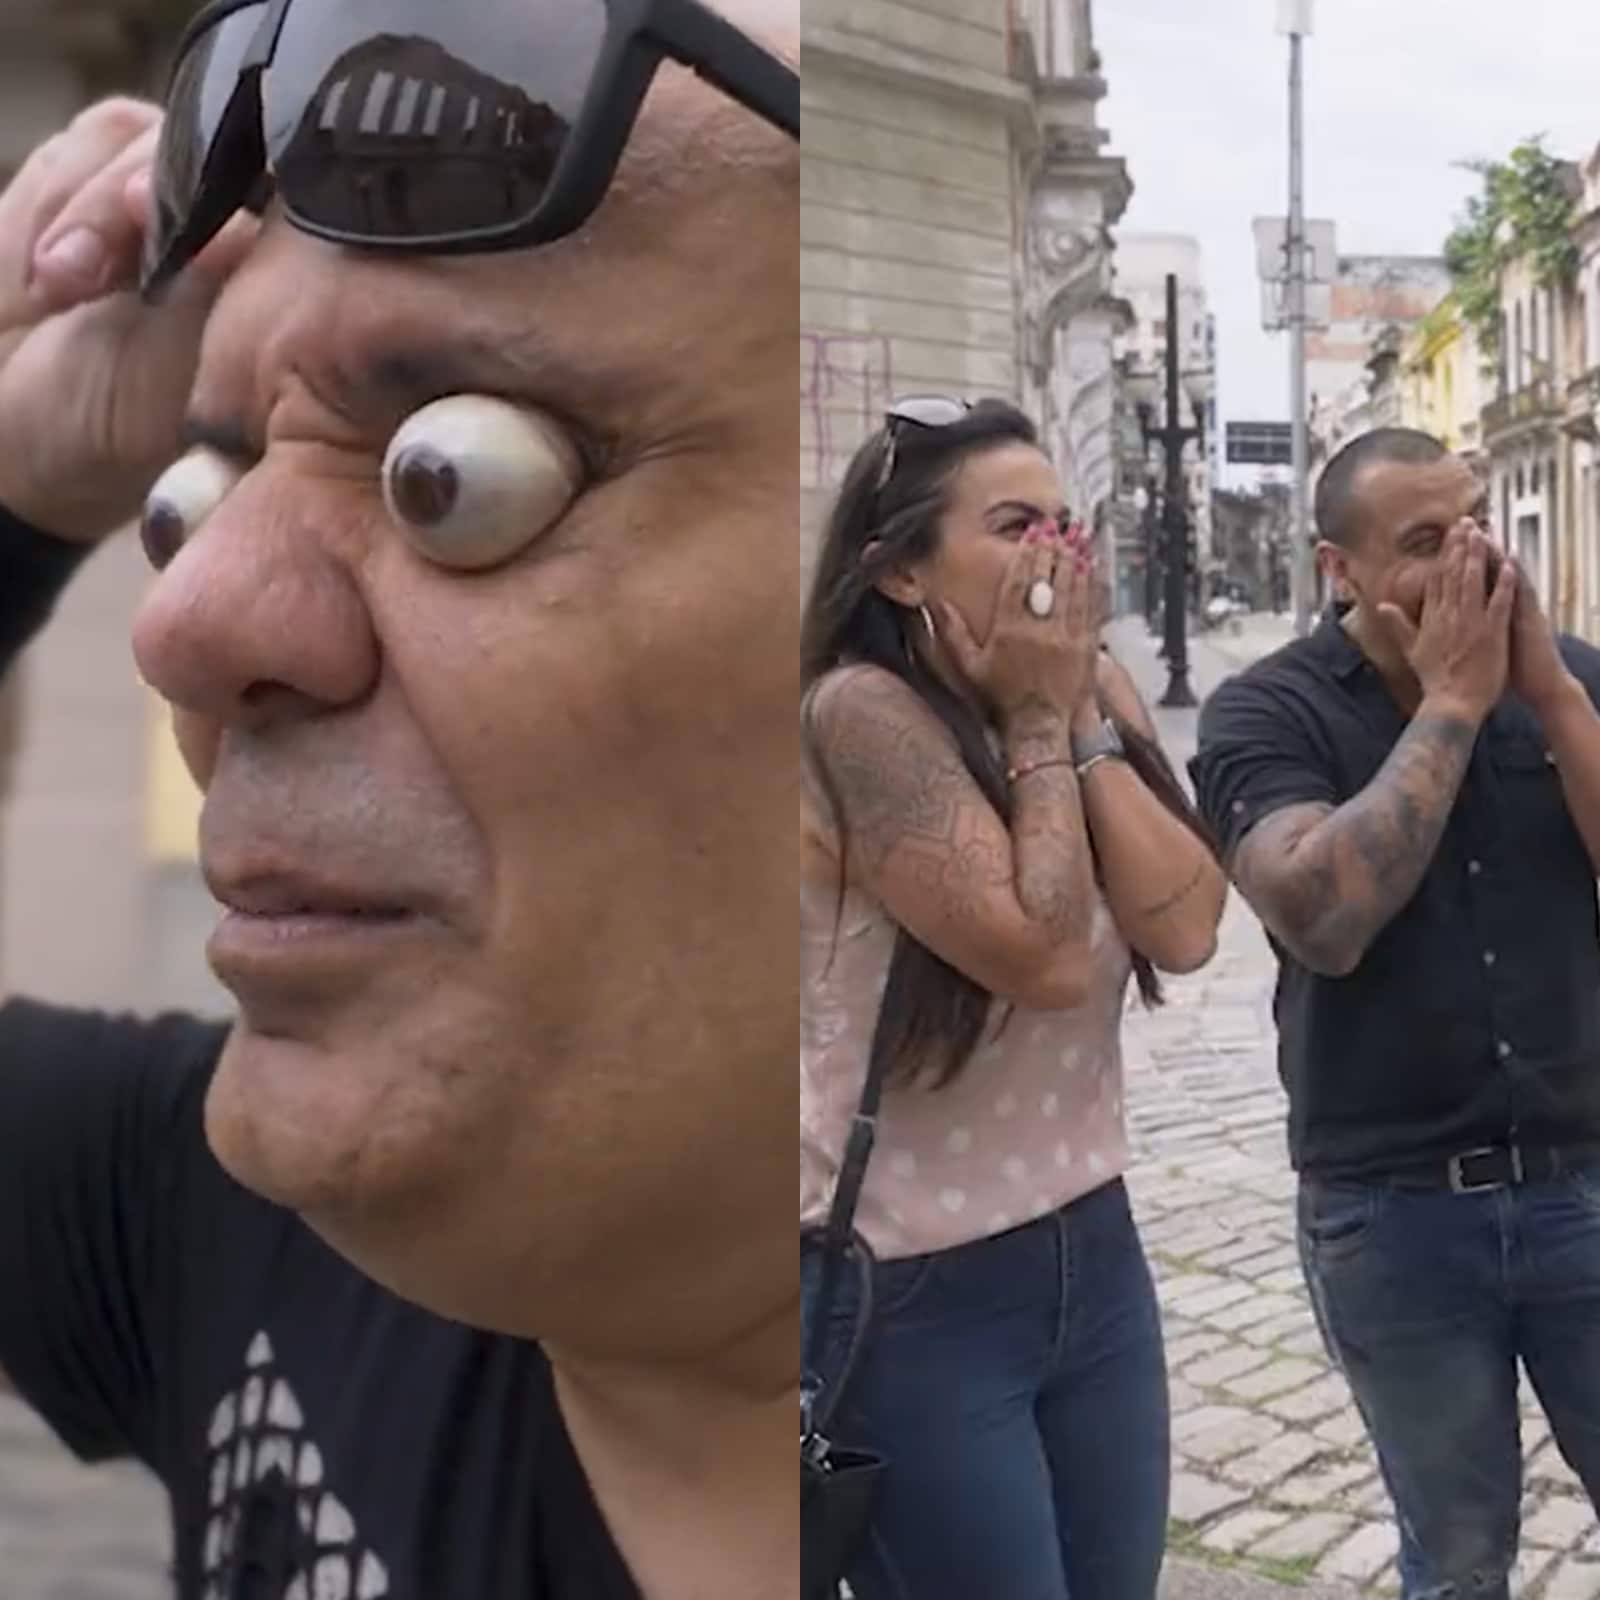 Man breaks world record for farthest eyeball pop